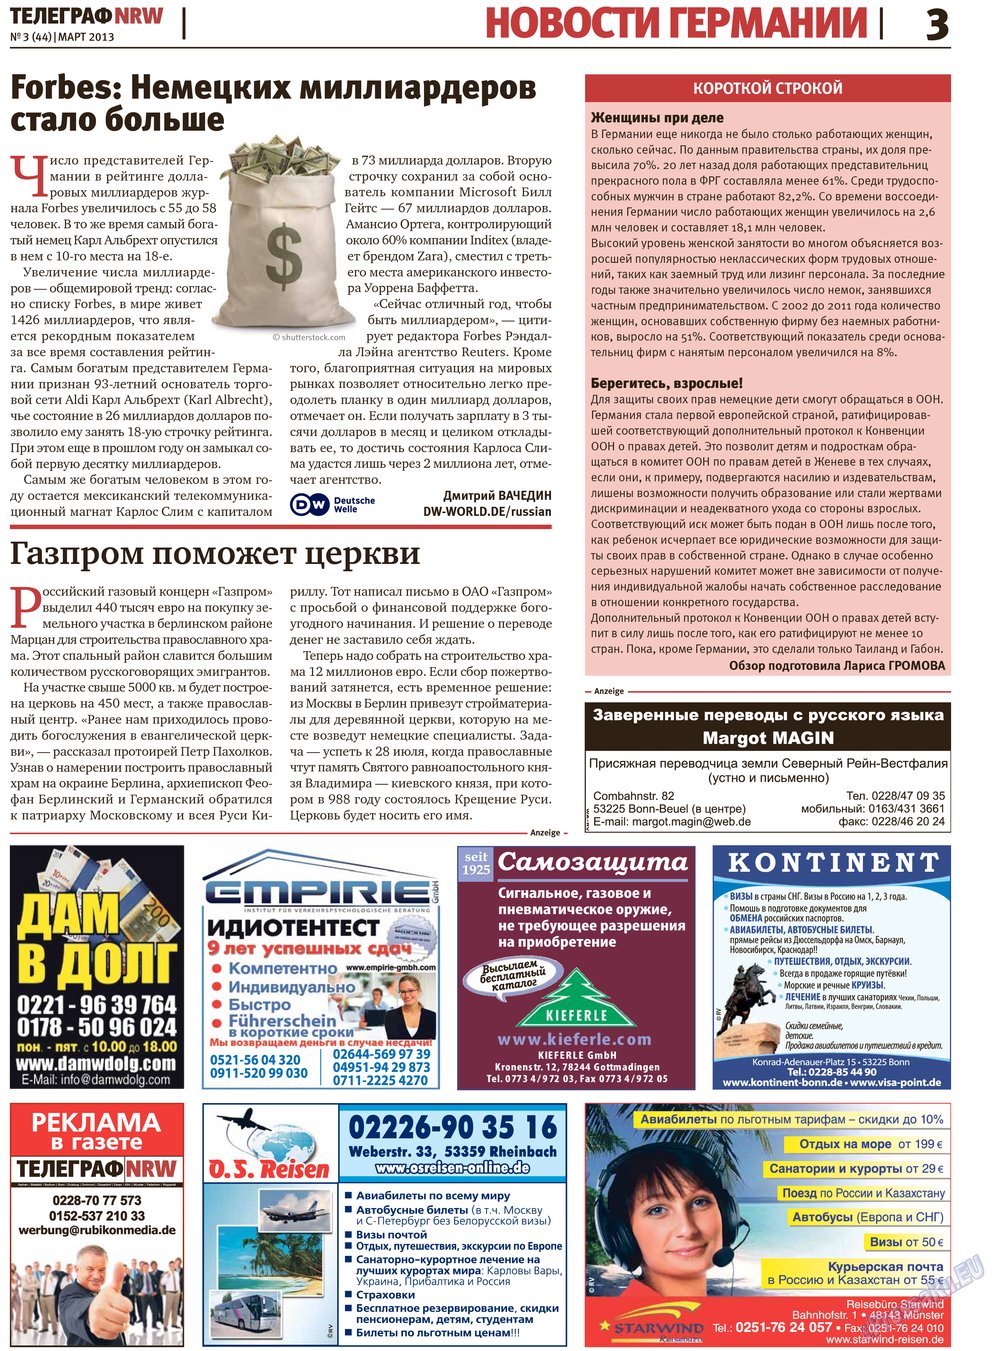 Телеграф NRW (газета). 2013 год, номер 3, стр. 3